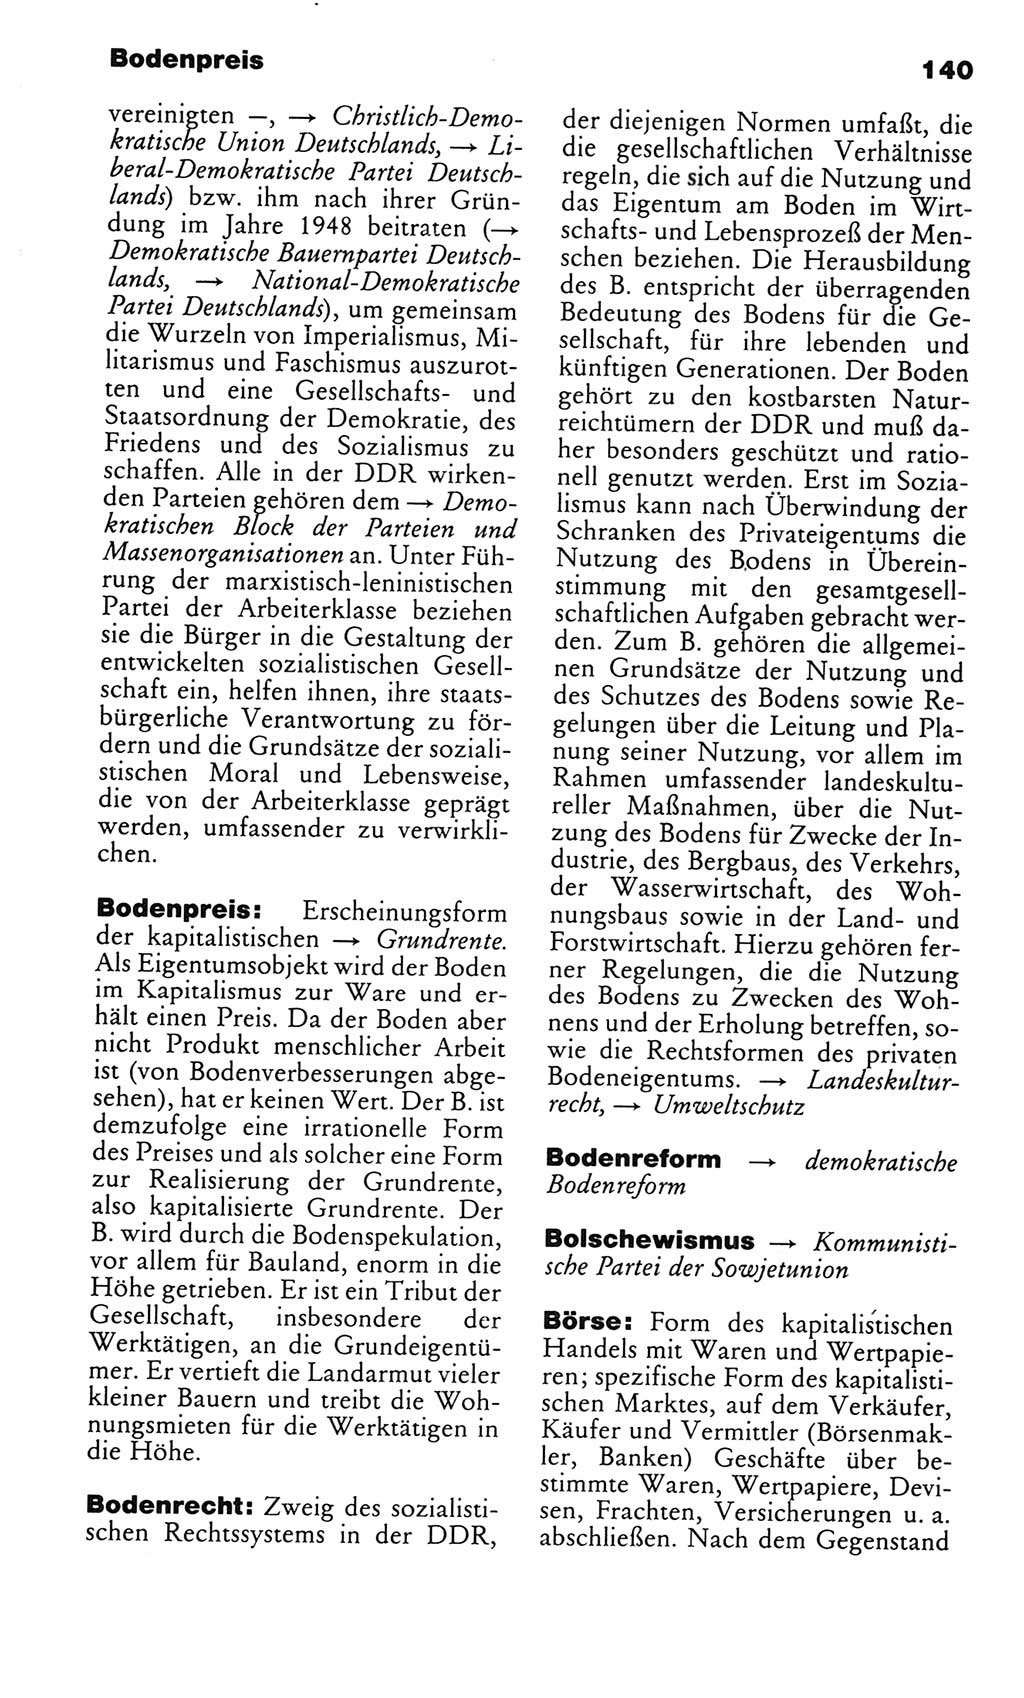 Kleines politisches Wörterbuch [Deutsche Demokratische Republik (DDR)] 1985, Seite 140 (Kl. pol. Wb. DDR 1985, S. 140)